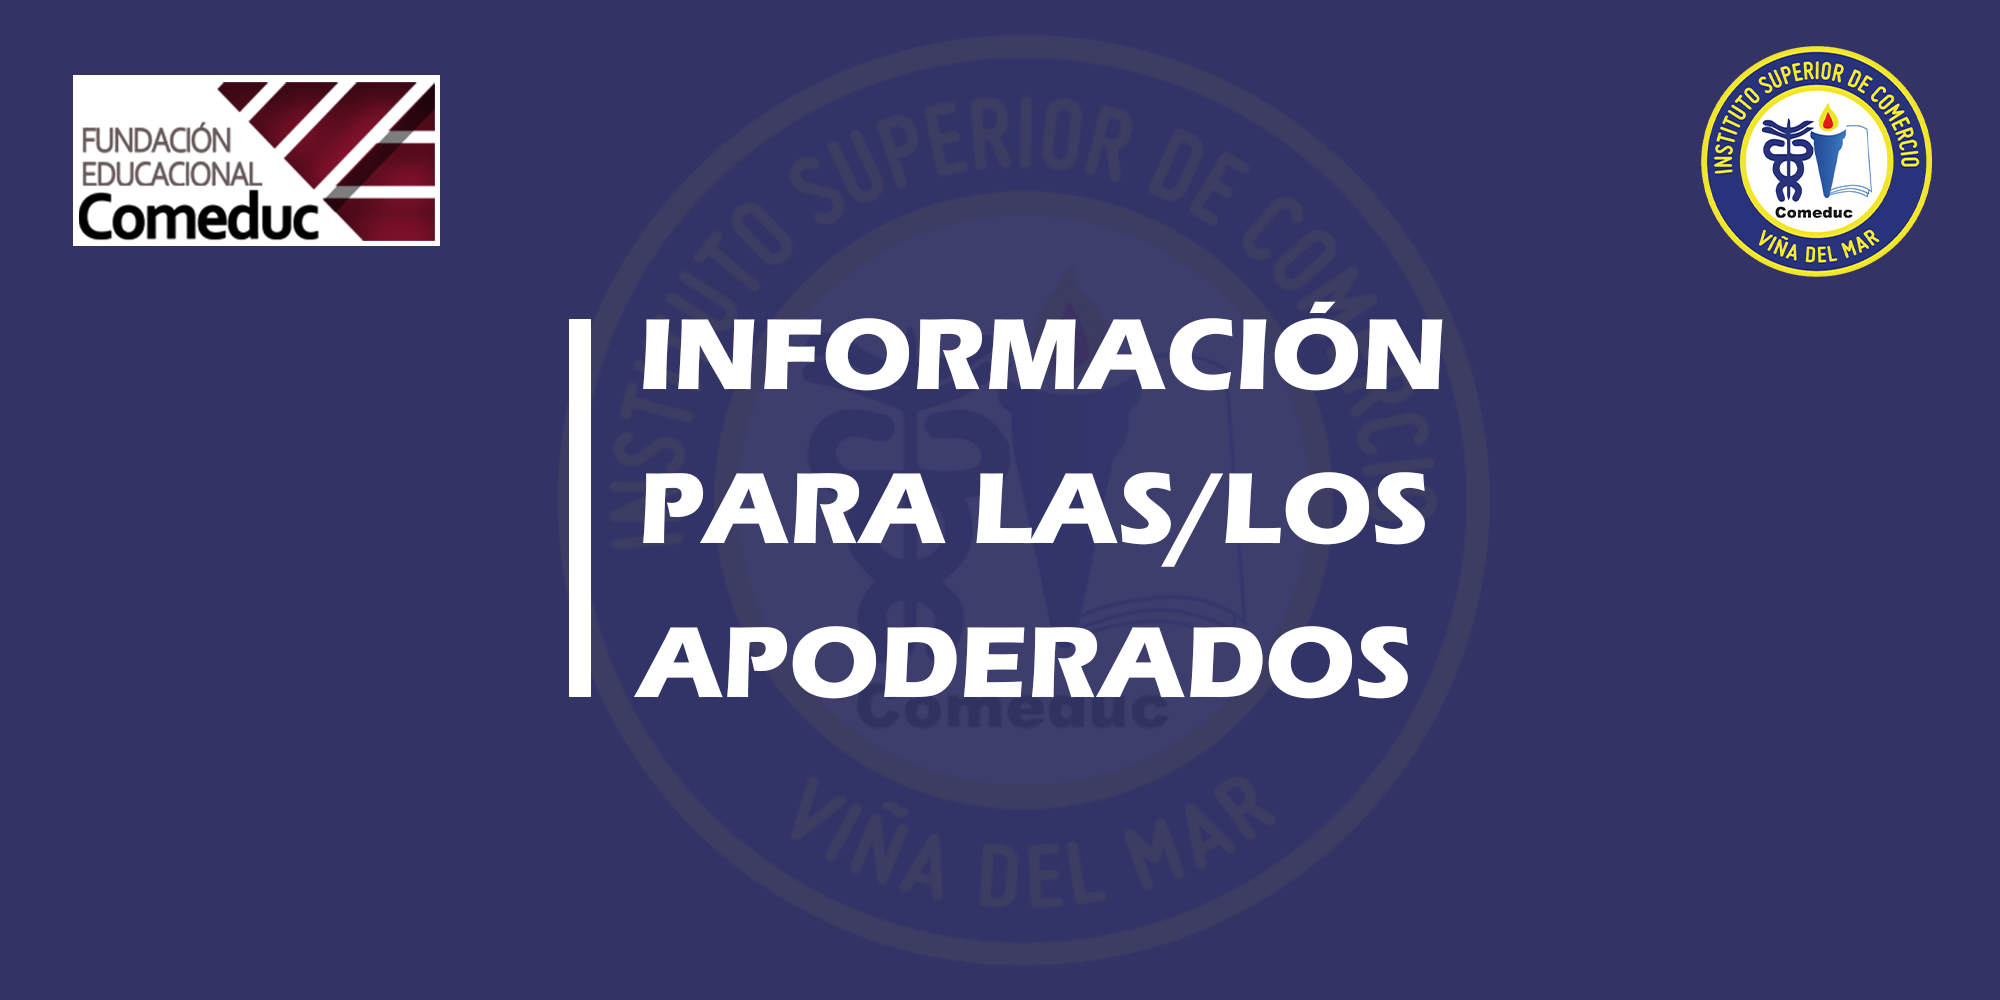 INFORMACIÓN PARA LAS/LOS APODERADOS